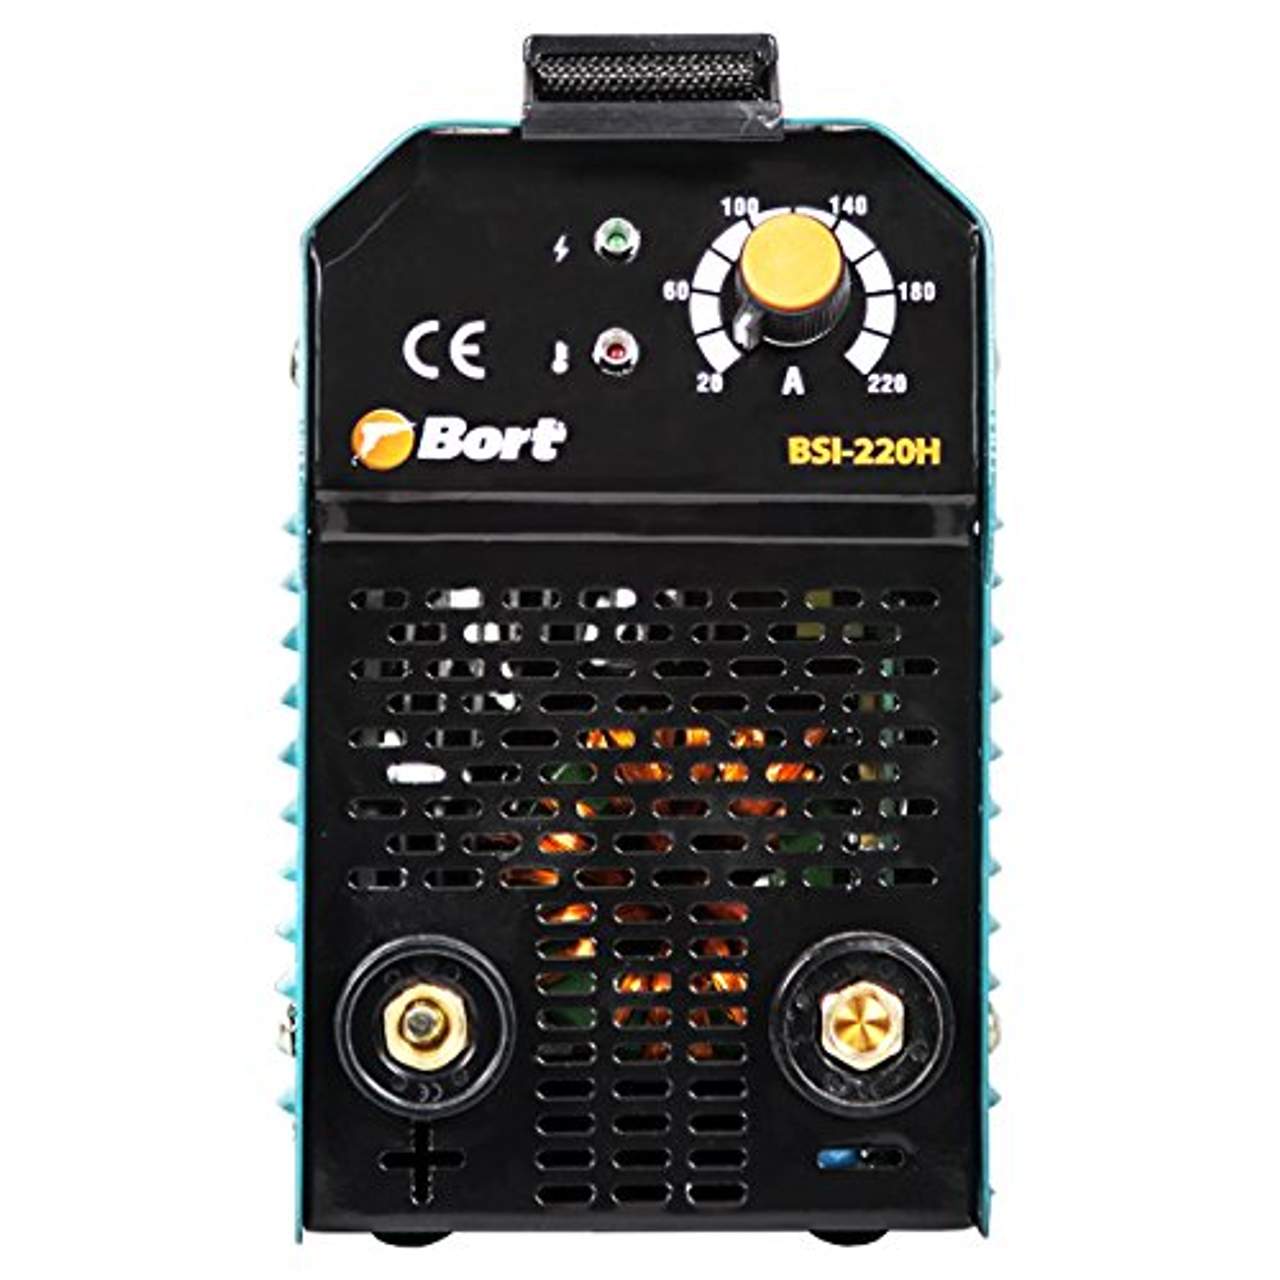 Bort Elektro-Schweißgerät BSI-220H mit Hot-Start